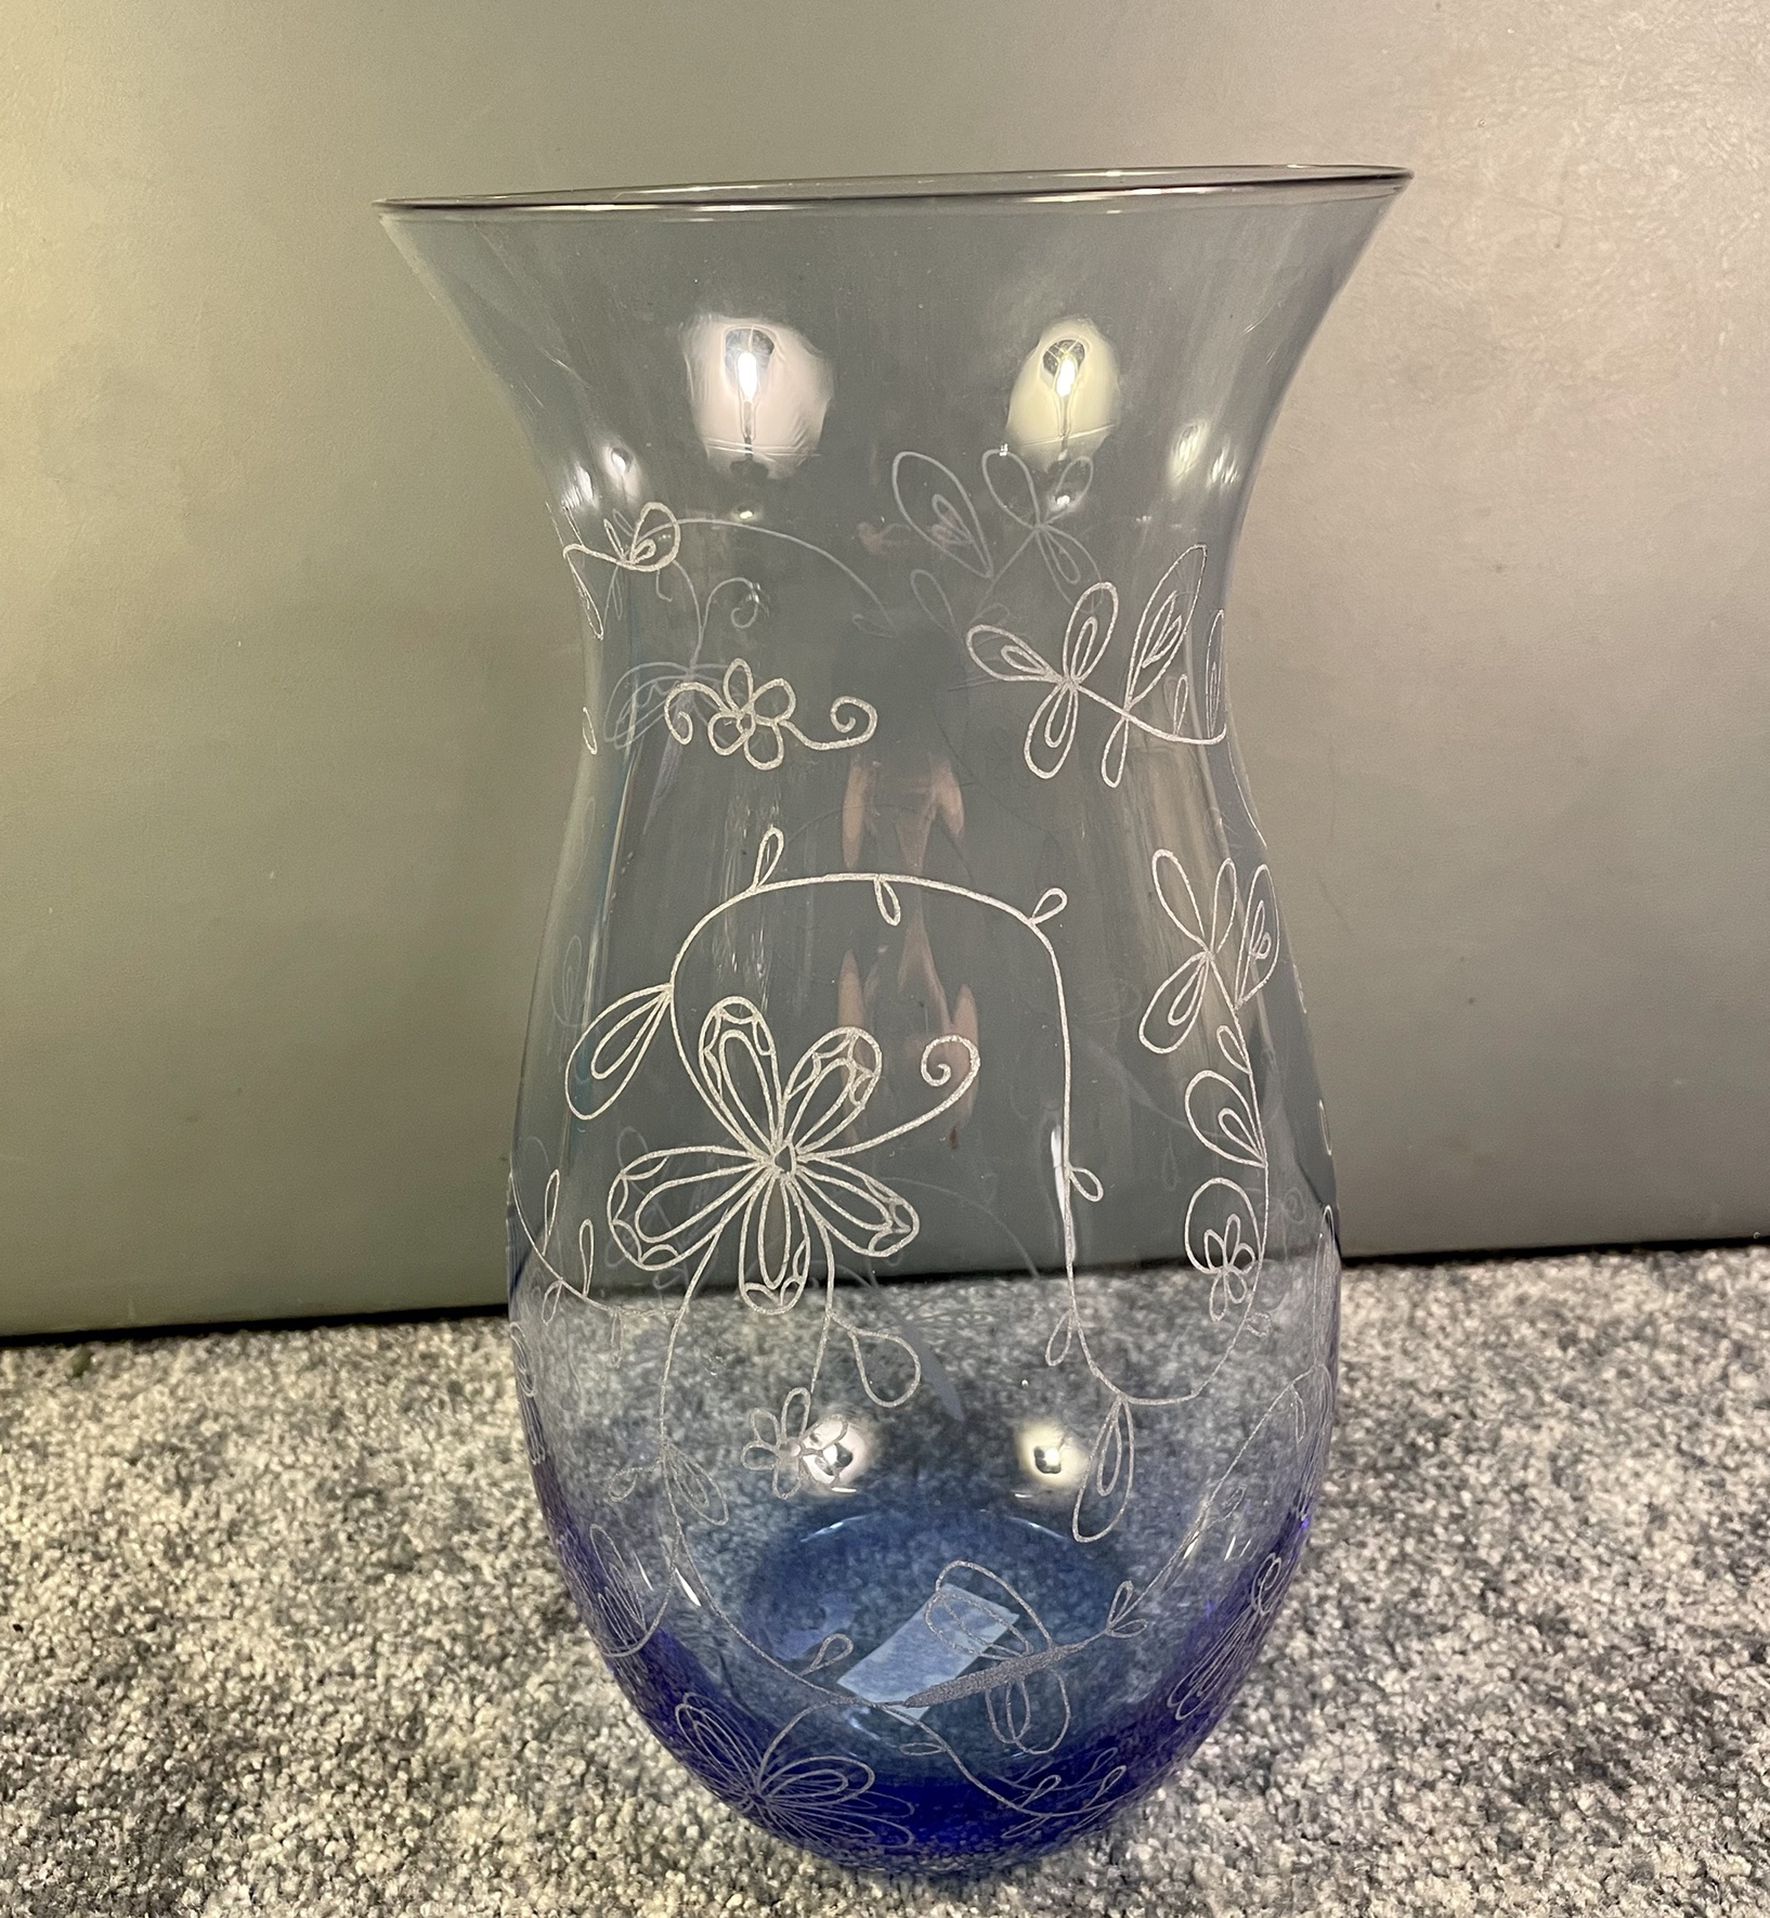 Nordstrom Glass Vase With White Flower Design